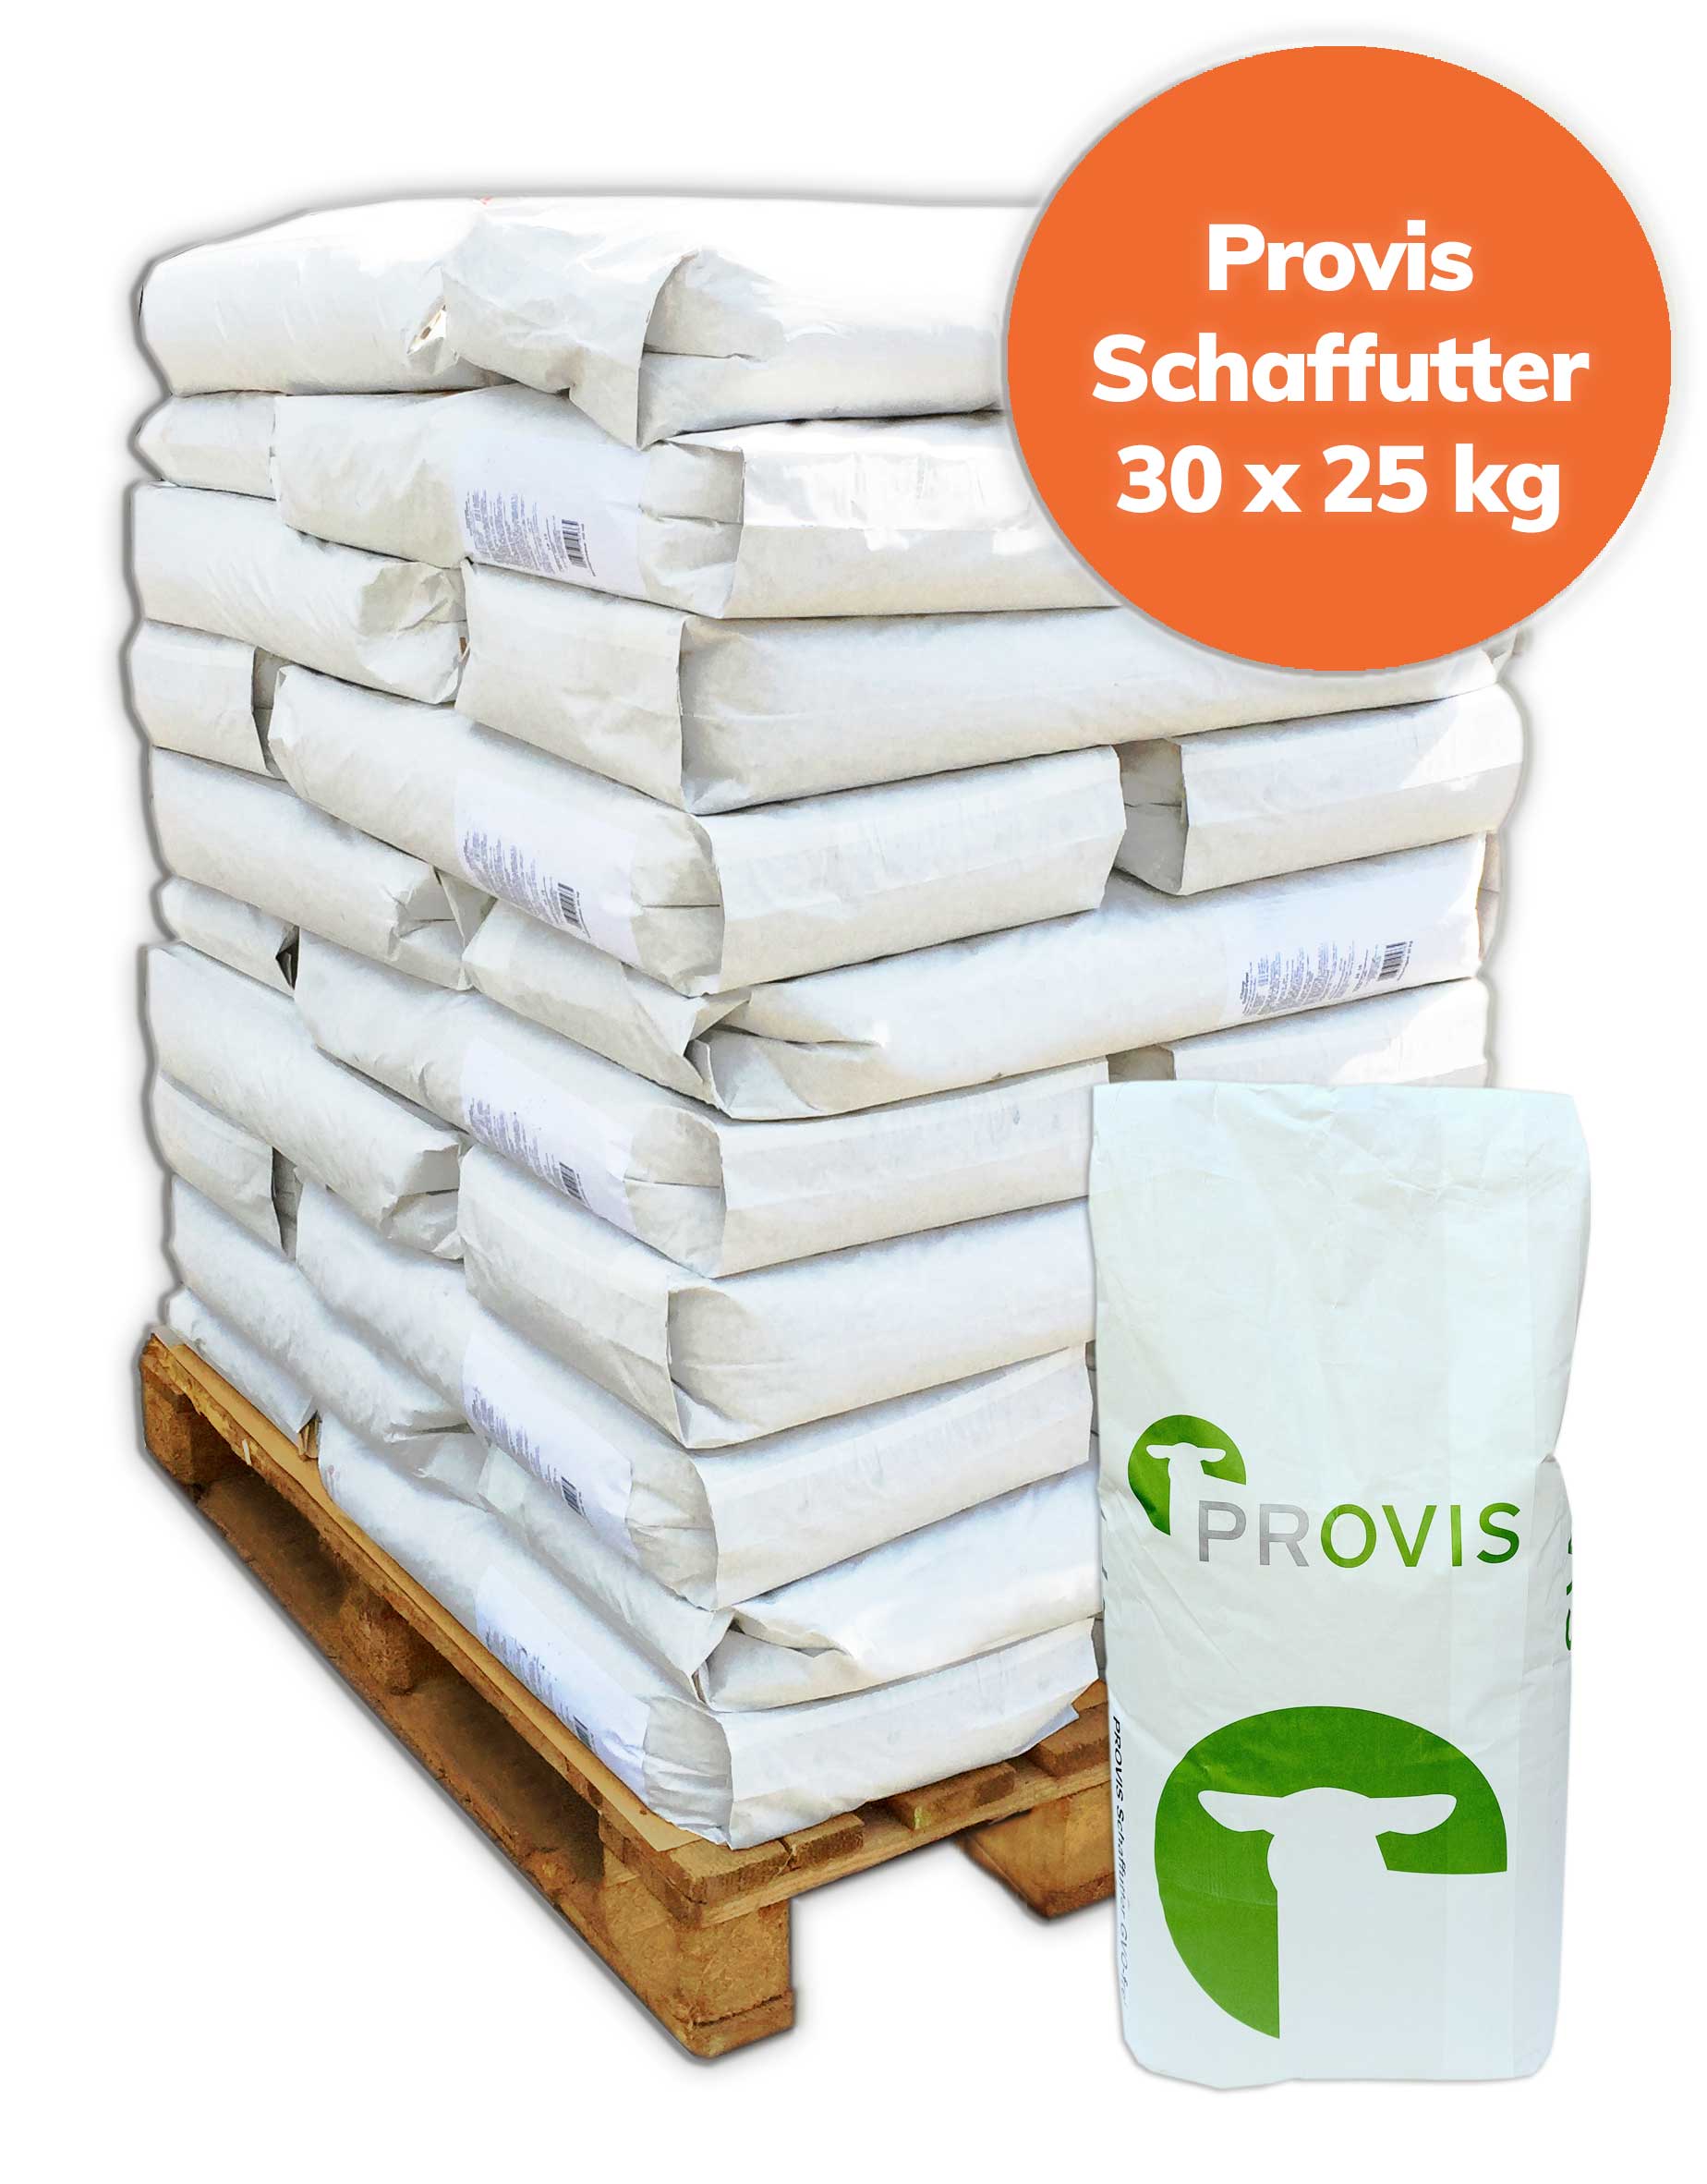 Palette Provis Schaffutter gesackt 750 kg, 30x 25 kg